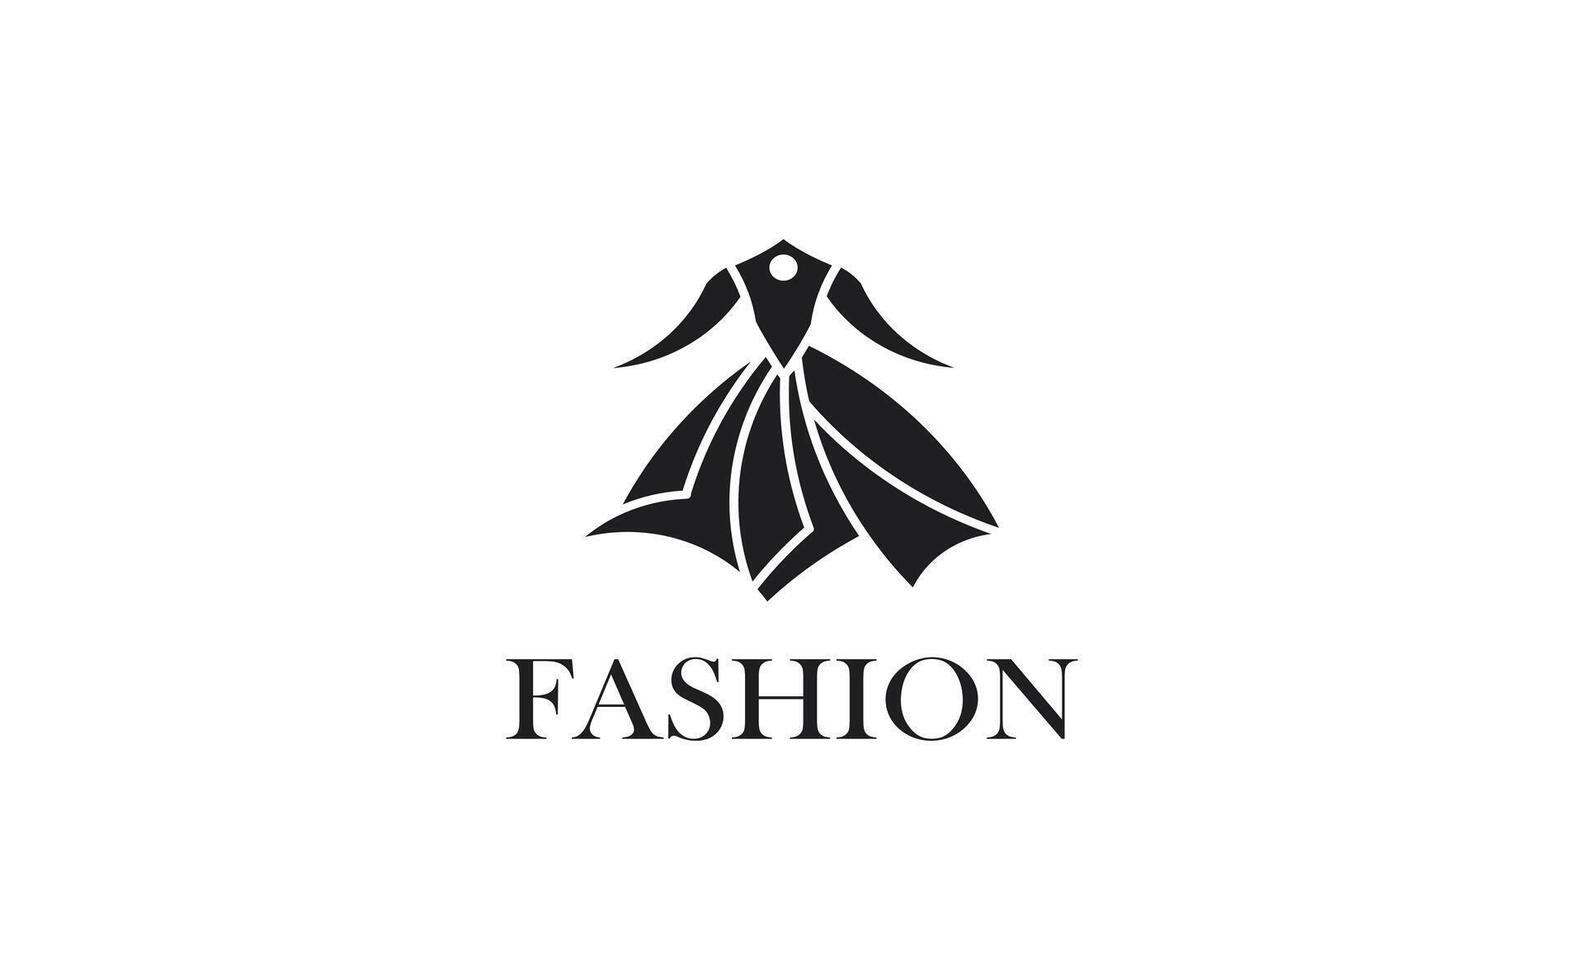 mode logo conception modèle adapté pour Vêtements marques, boutiques, mode les blogs, vêtements sites Internet, designer portefeuilles, vente au détail magasins, et liés à la mode entreprises vecteur